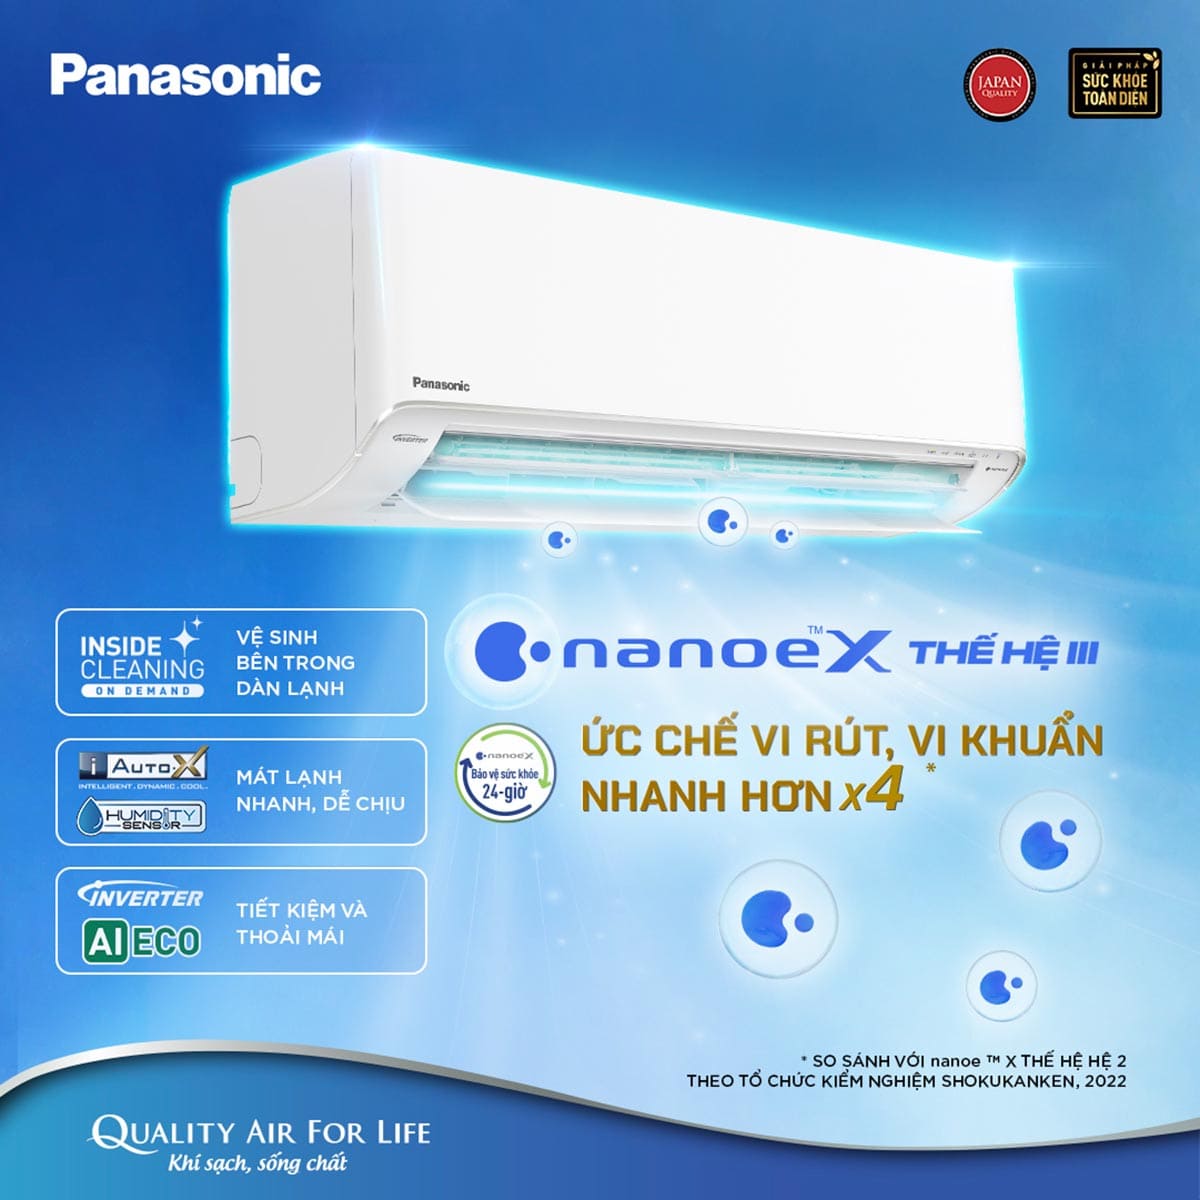 Máy lạnh Panasonic được người dùng tin tưởng lựa chọn